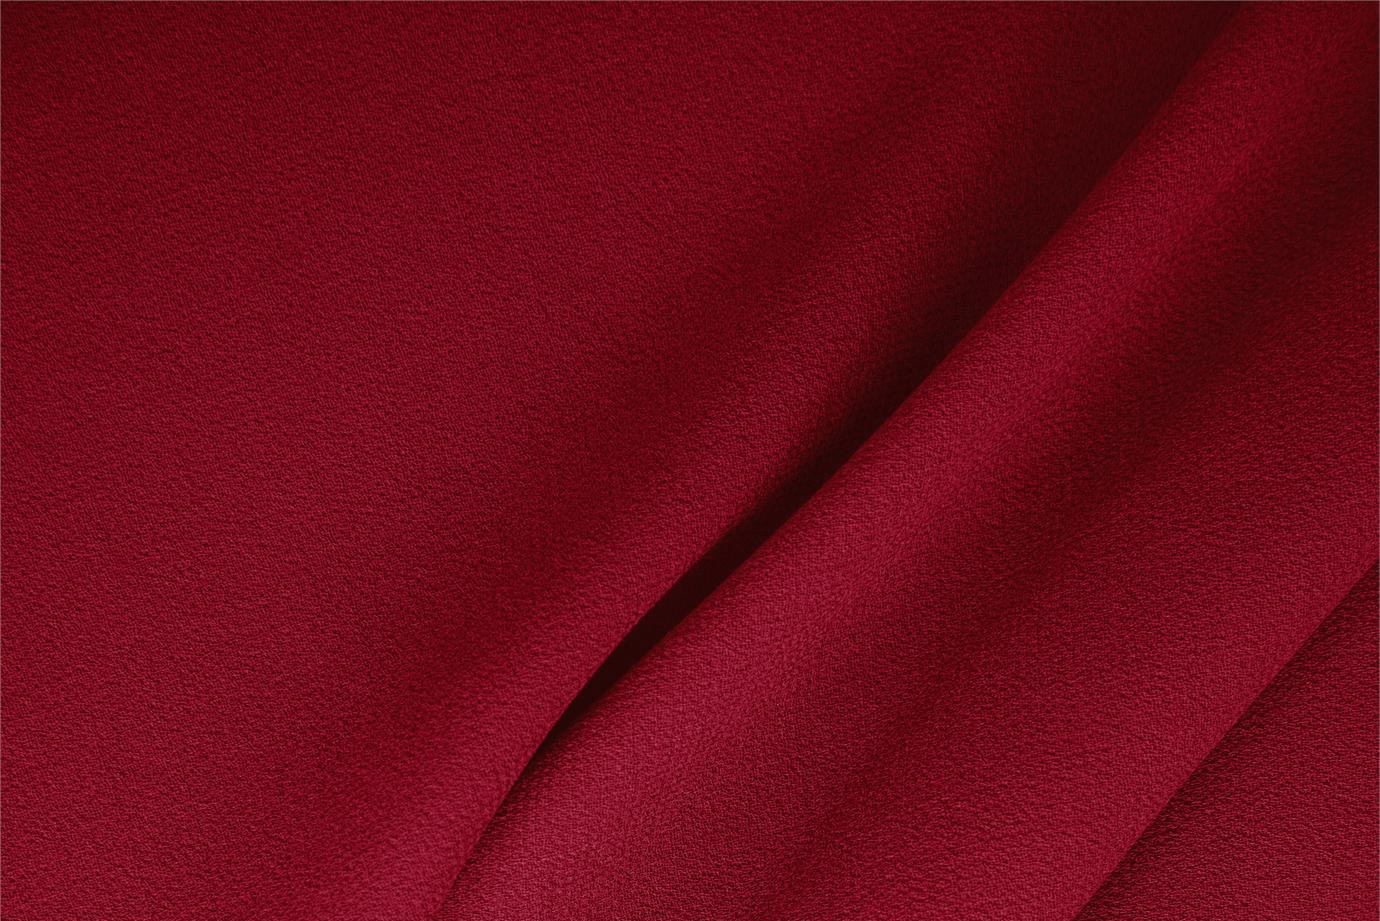 Tessuto Doppia Crepella di Lana Rosso Campari in Lana per abbigliamento